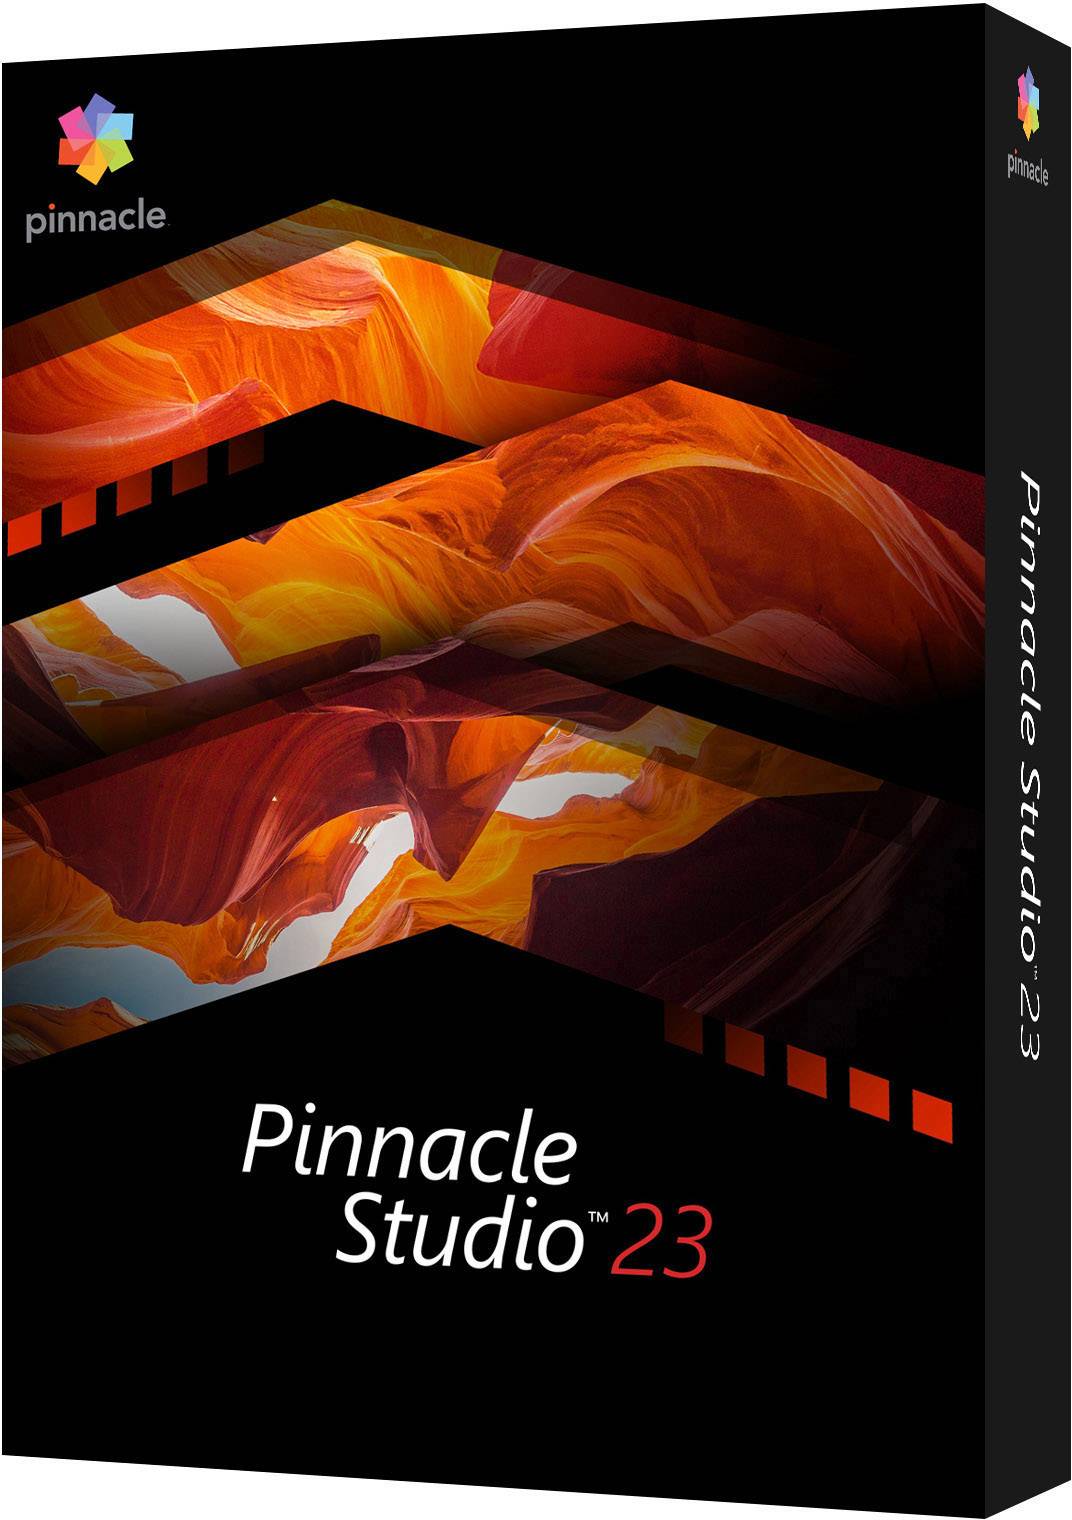 pinnacle studio 23 review